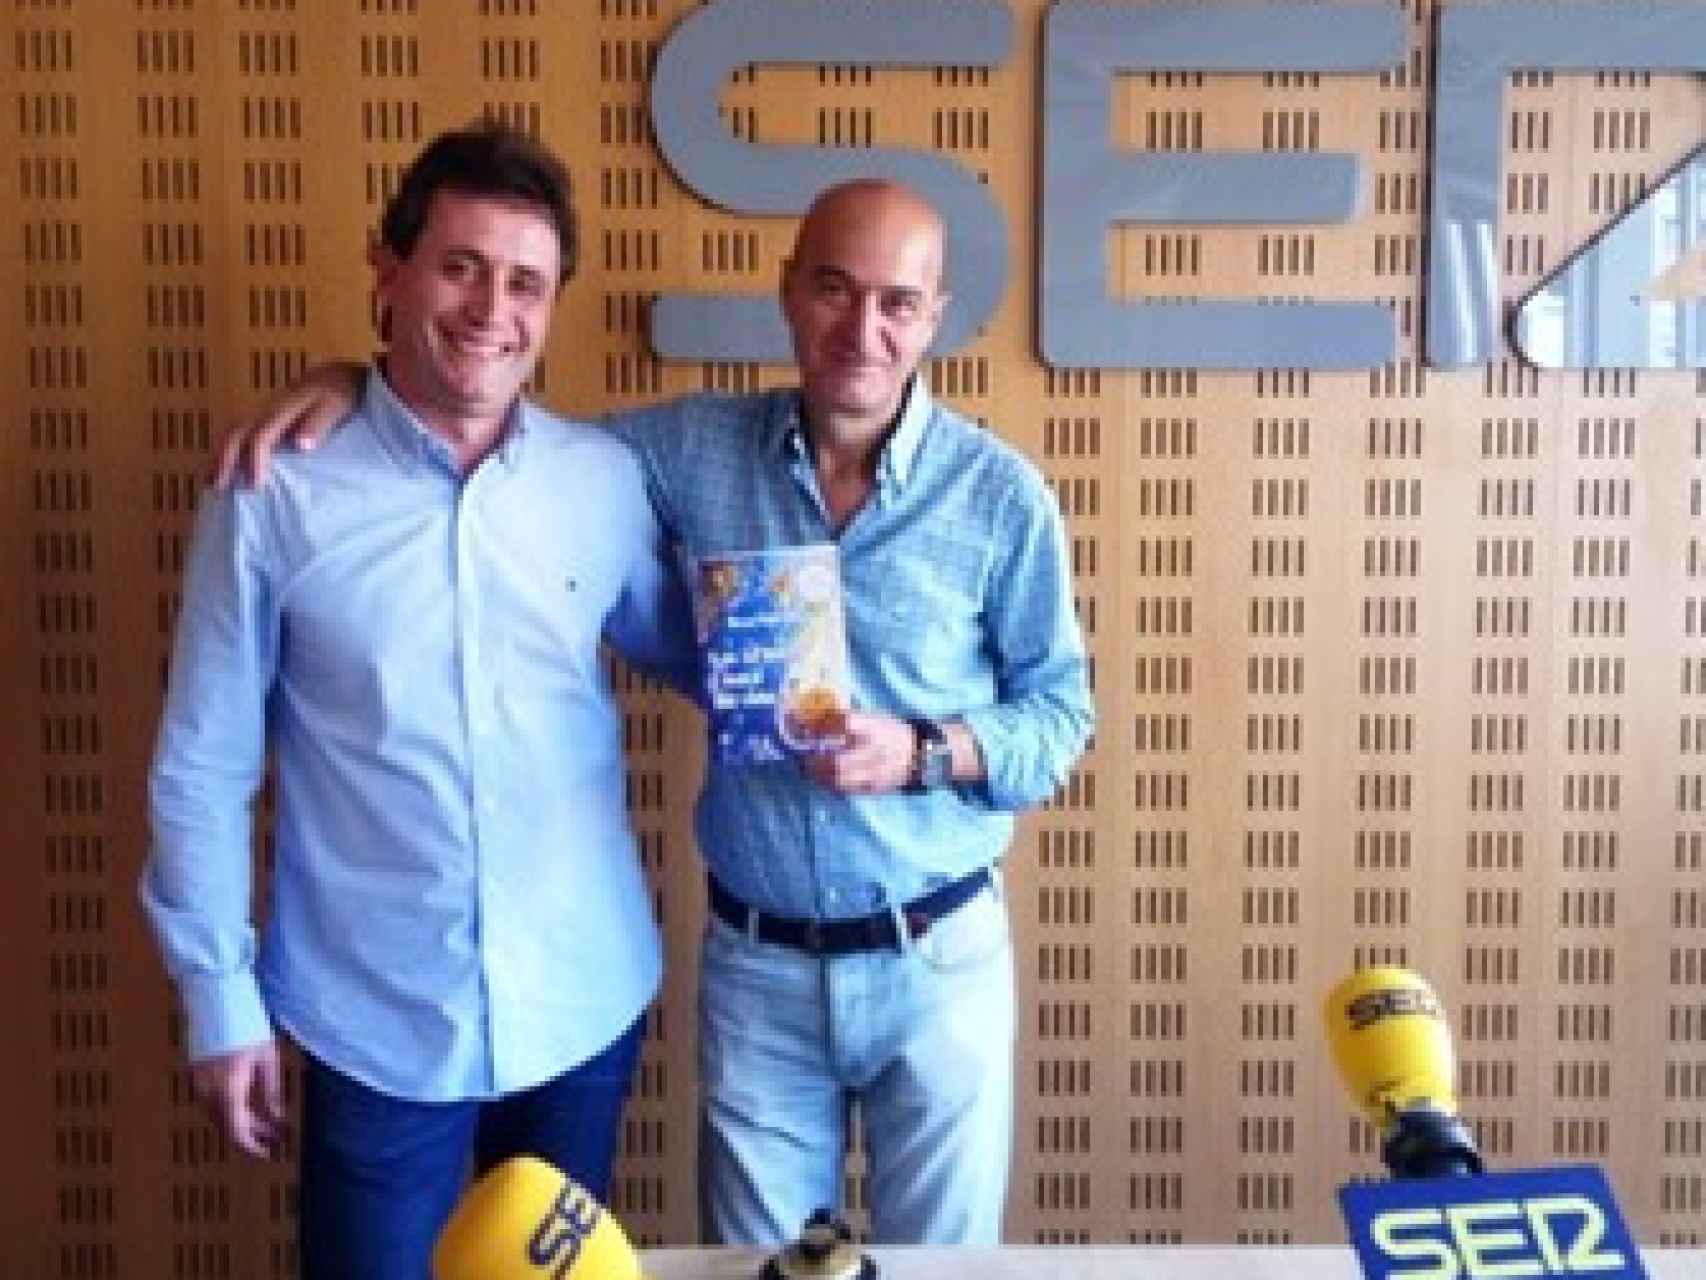 En Radio Valladolid presentando sus “52 luces”